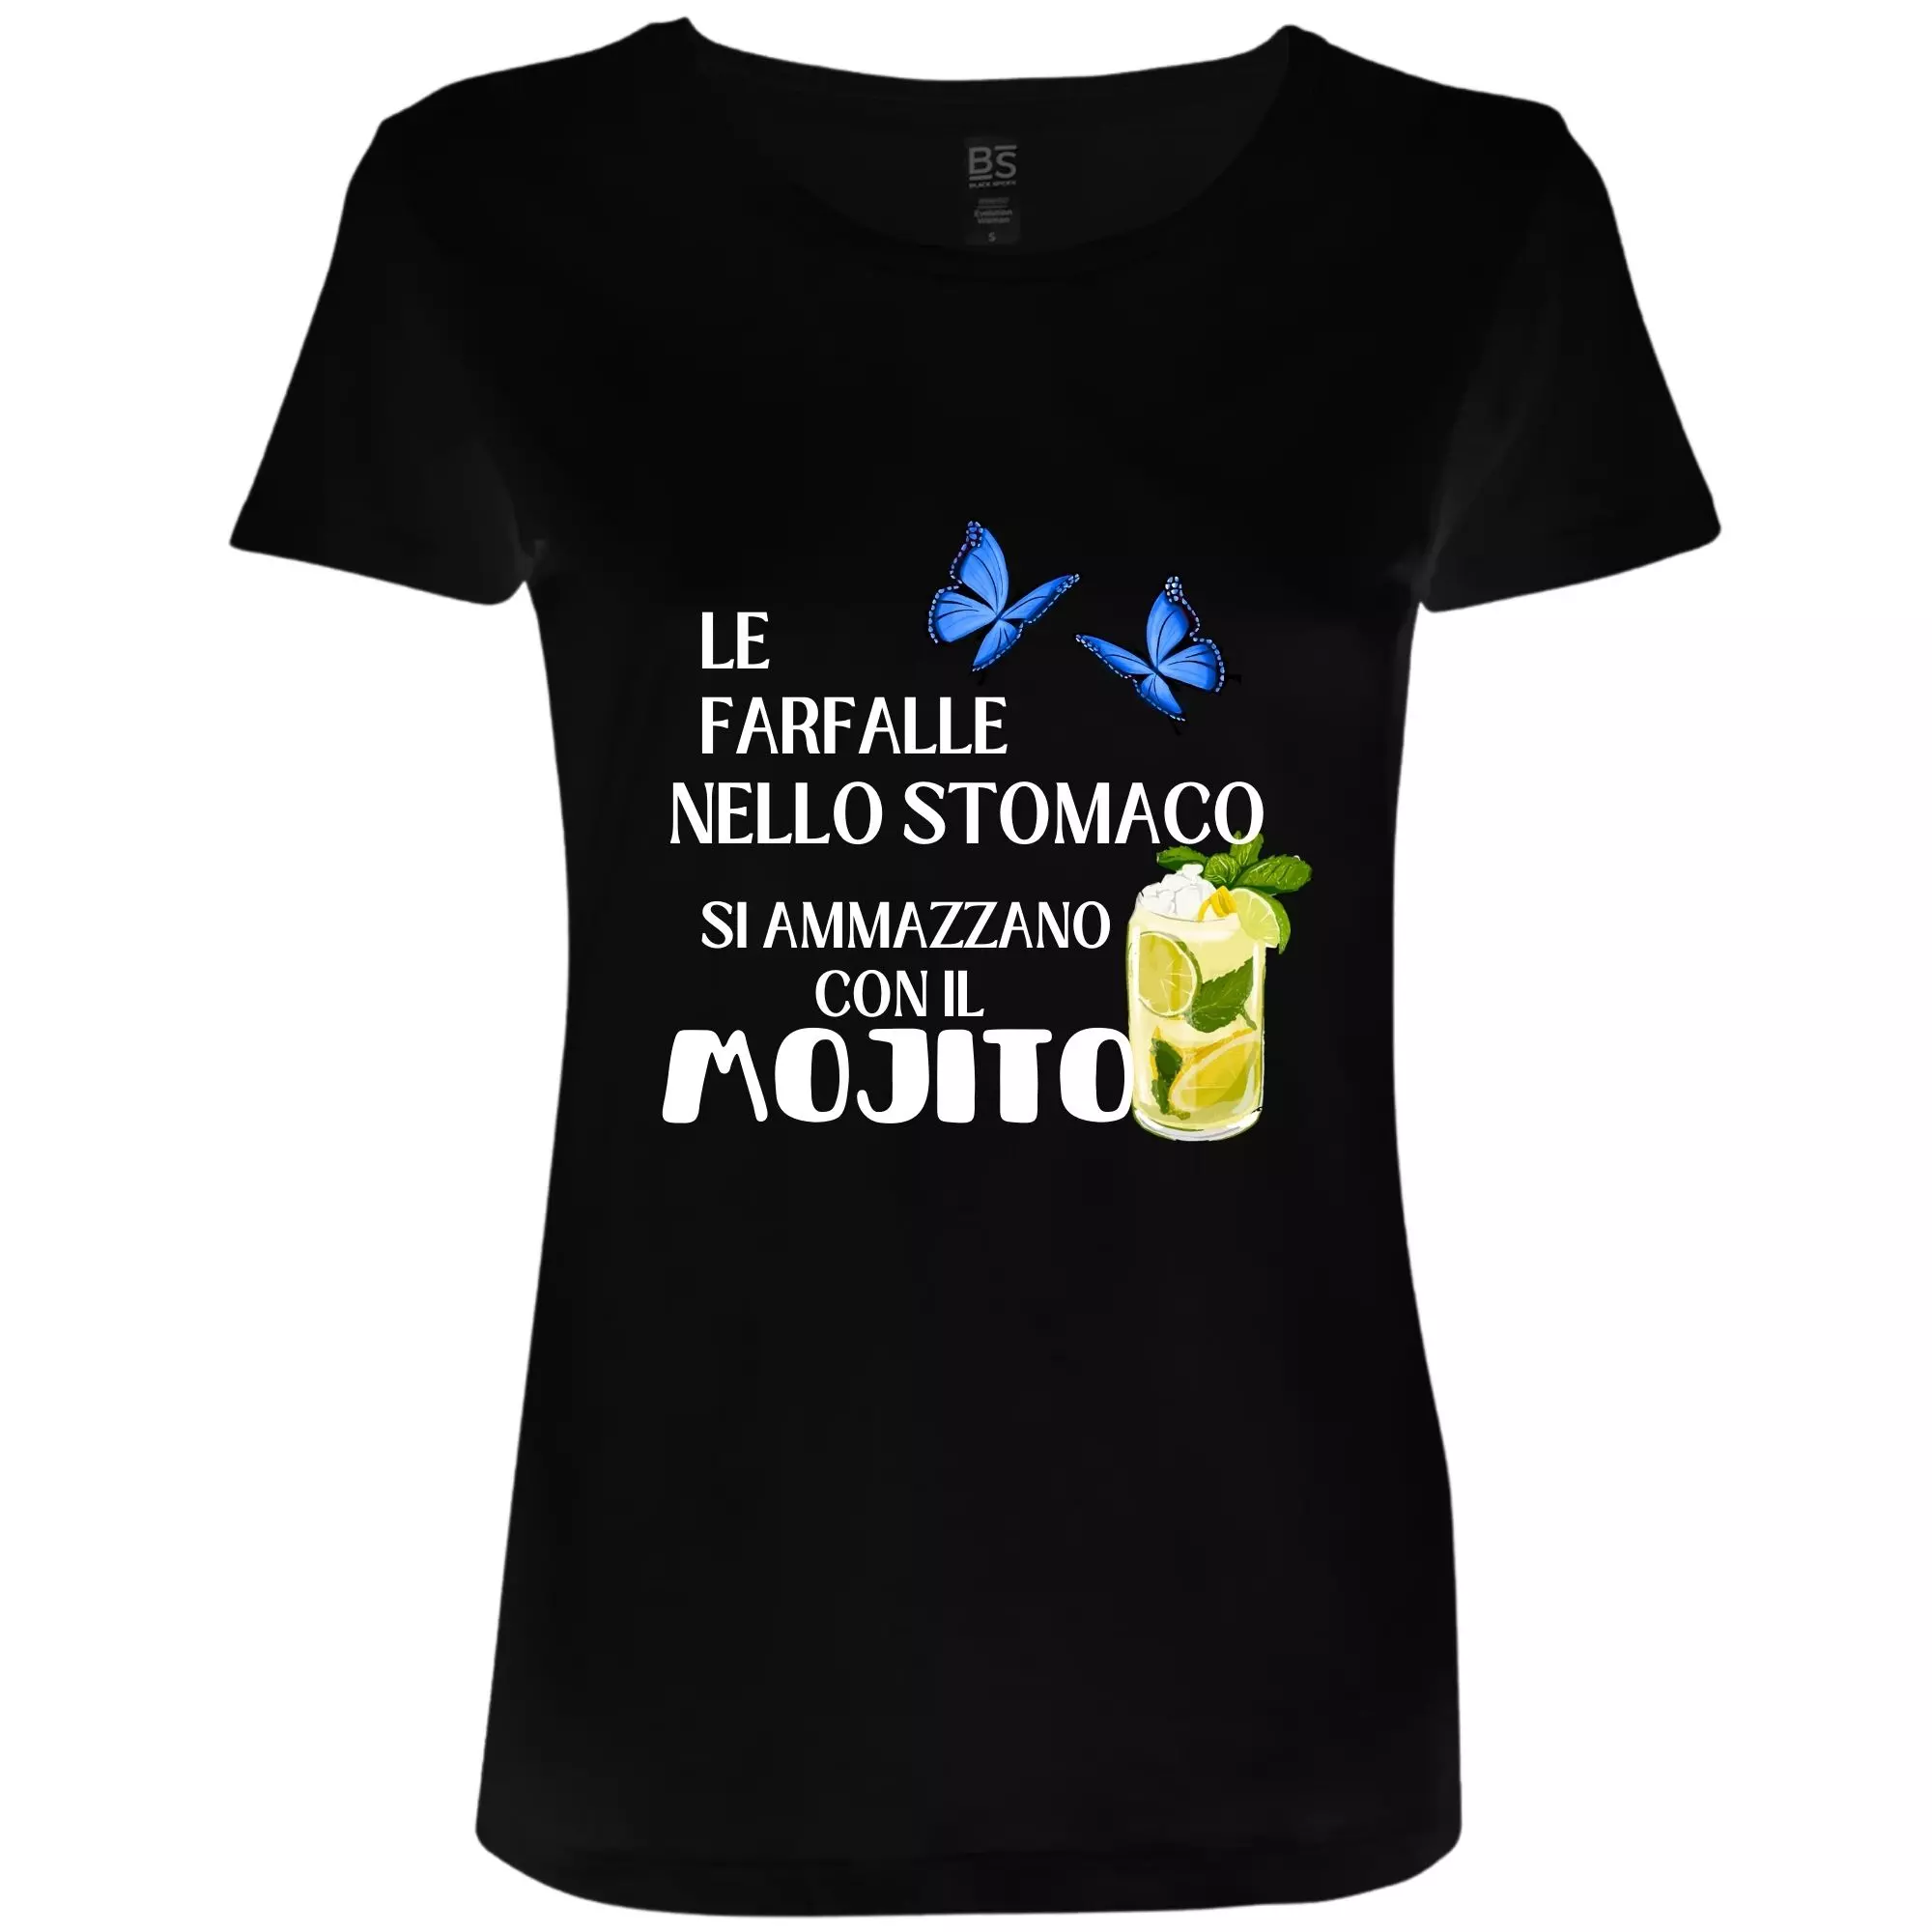 Mojito: T-shirt divertente da donna